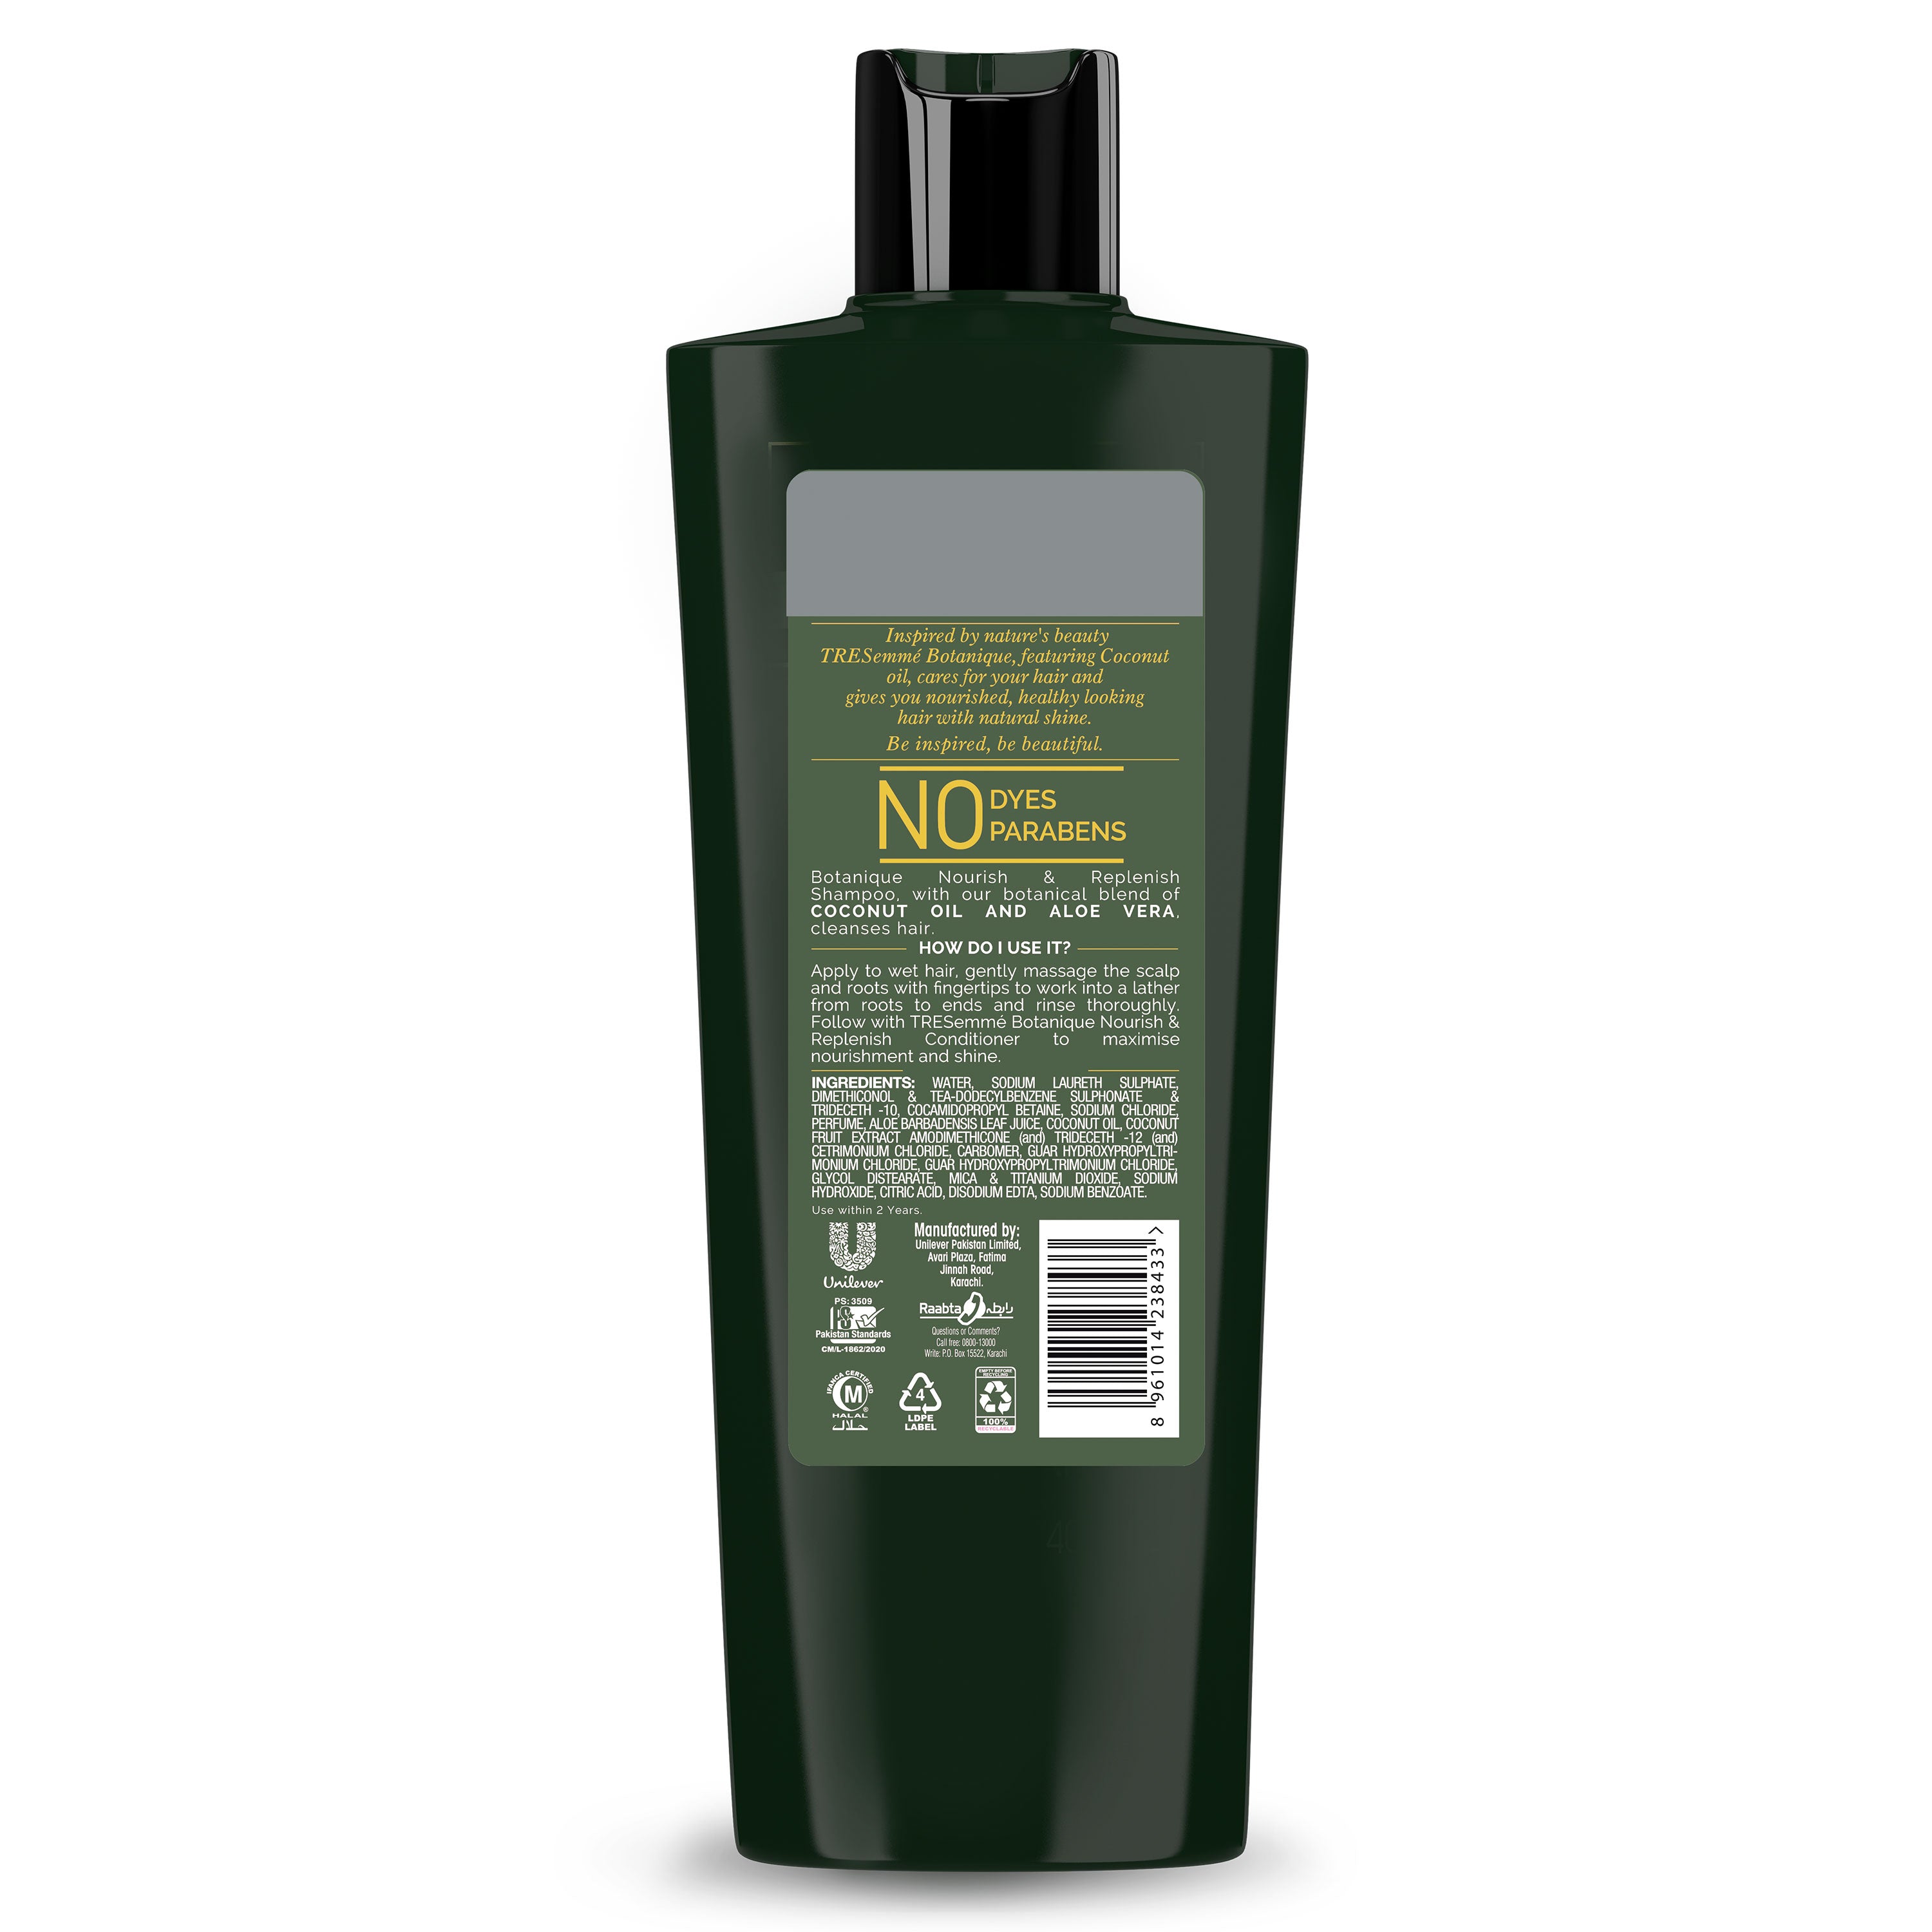 Tresemme Botanique Shampoo Nourish & Replenish - 360Ml